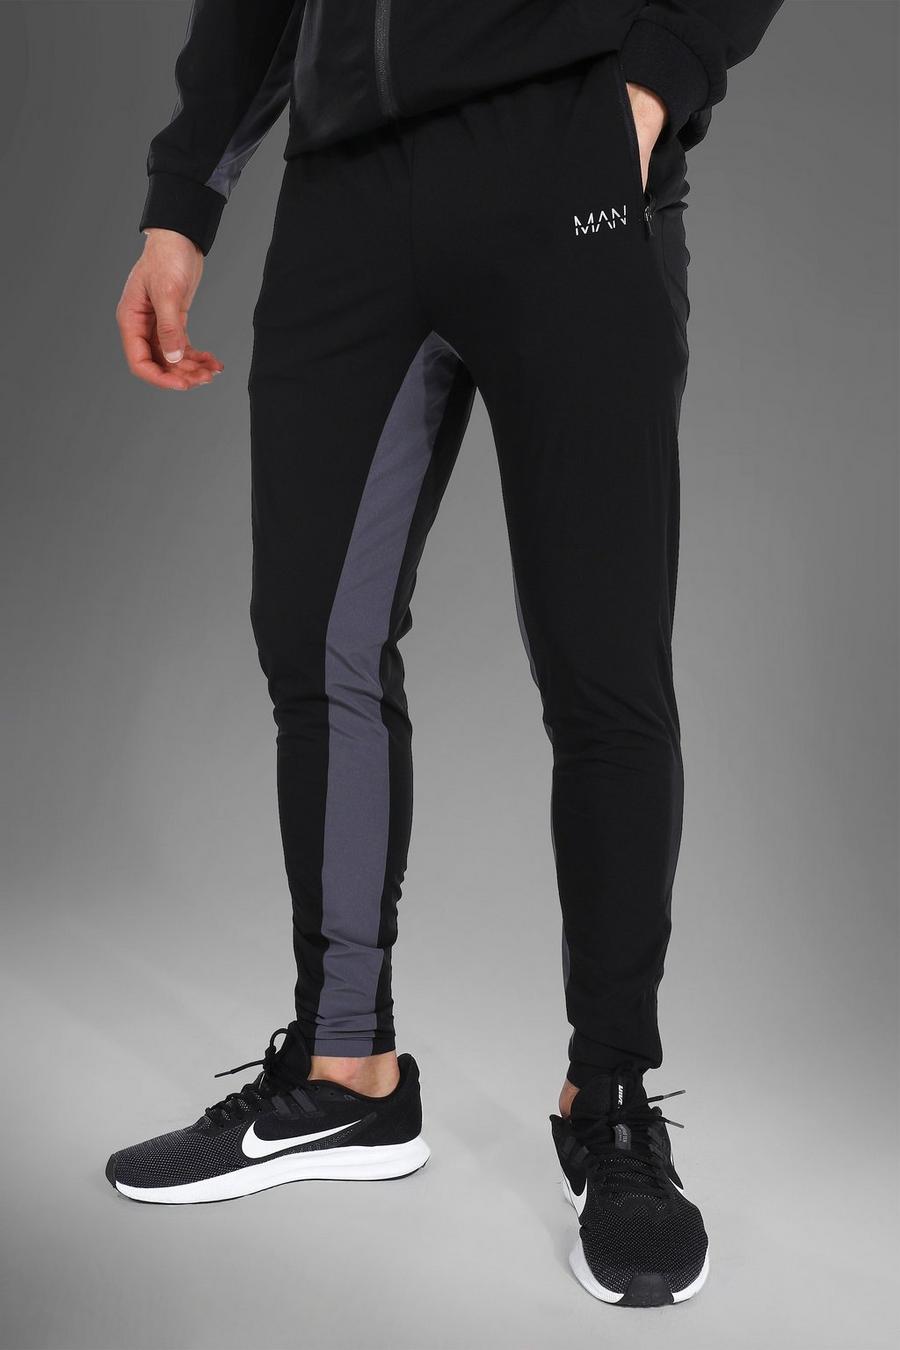 שחור מכנסי ריצה ספורטיביים ארוגים עם כיתוב Man image number 1